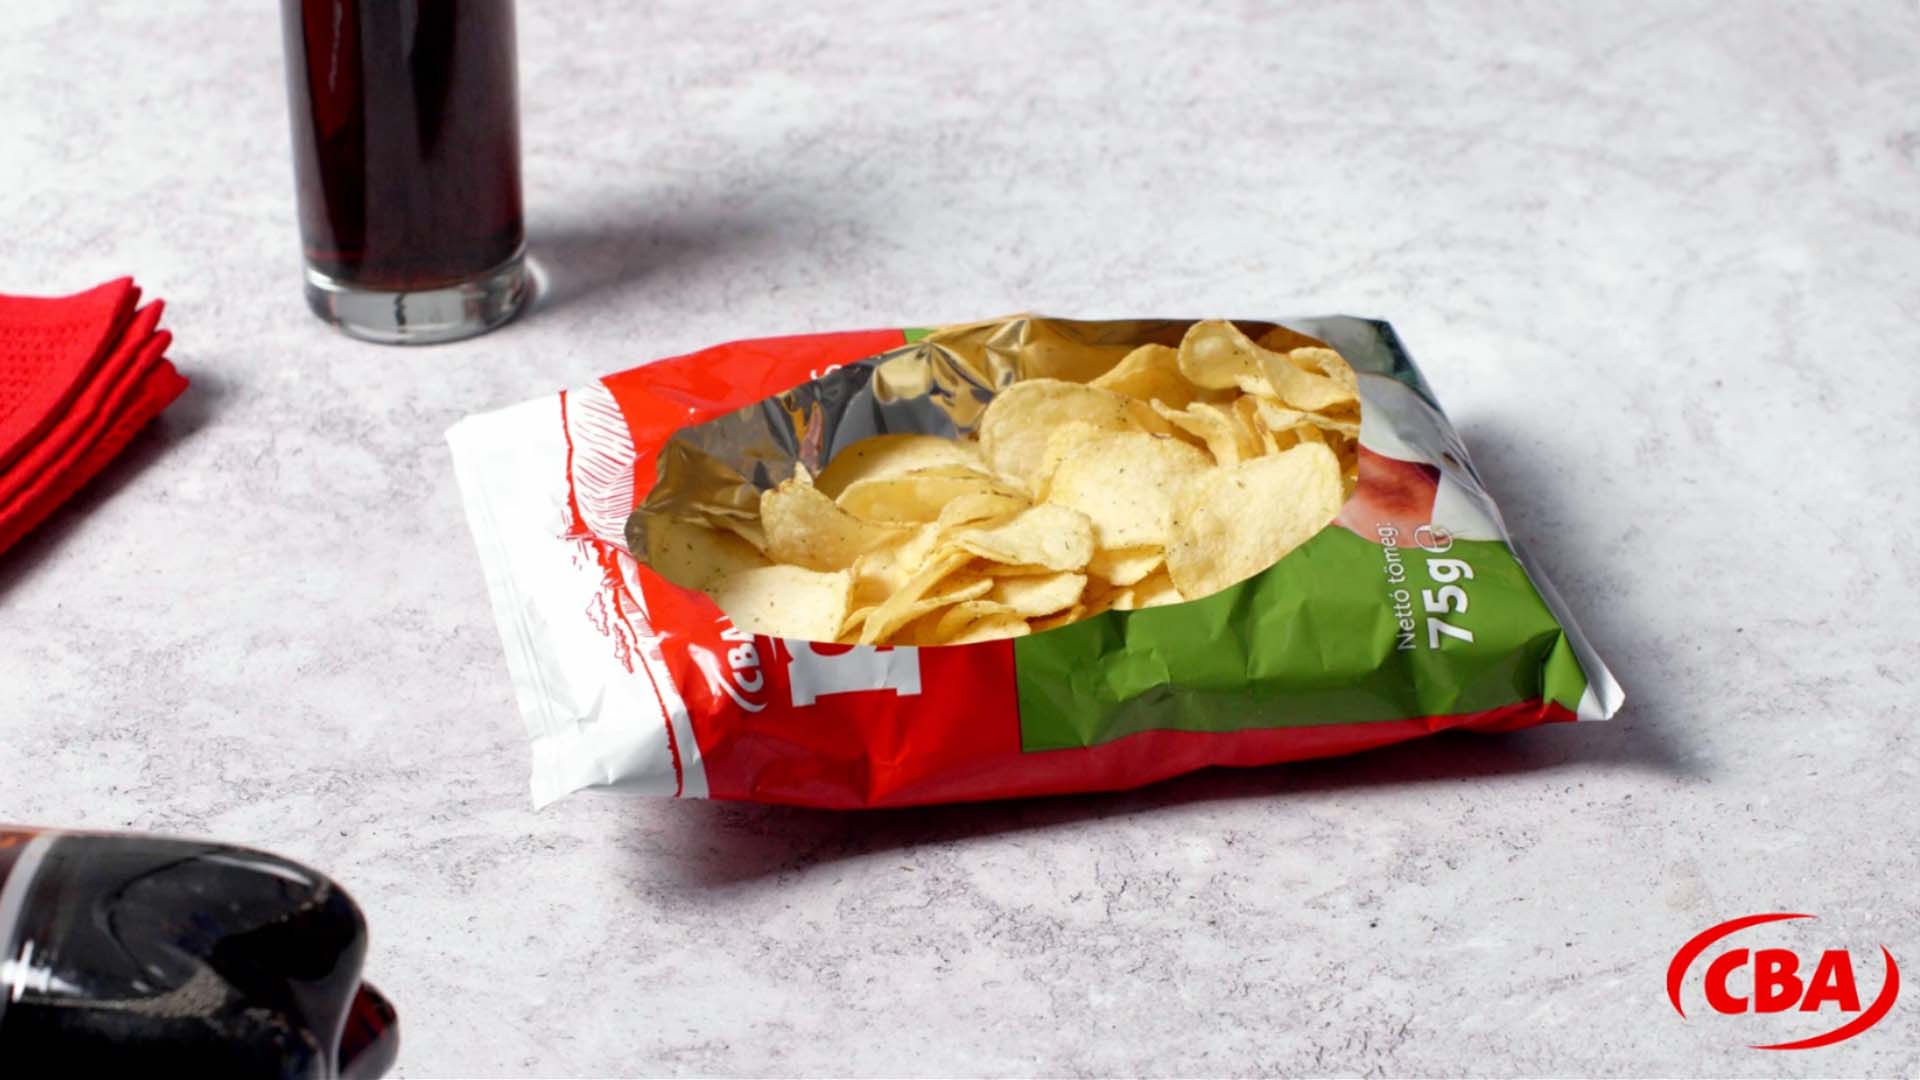 Trükkök a chips-es zacskó kreatív használatához